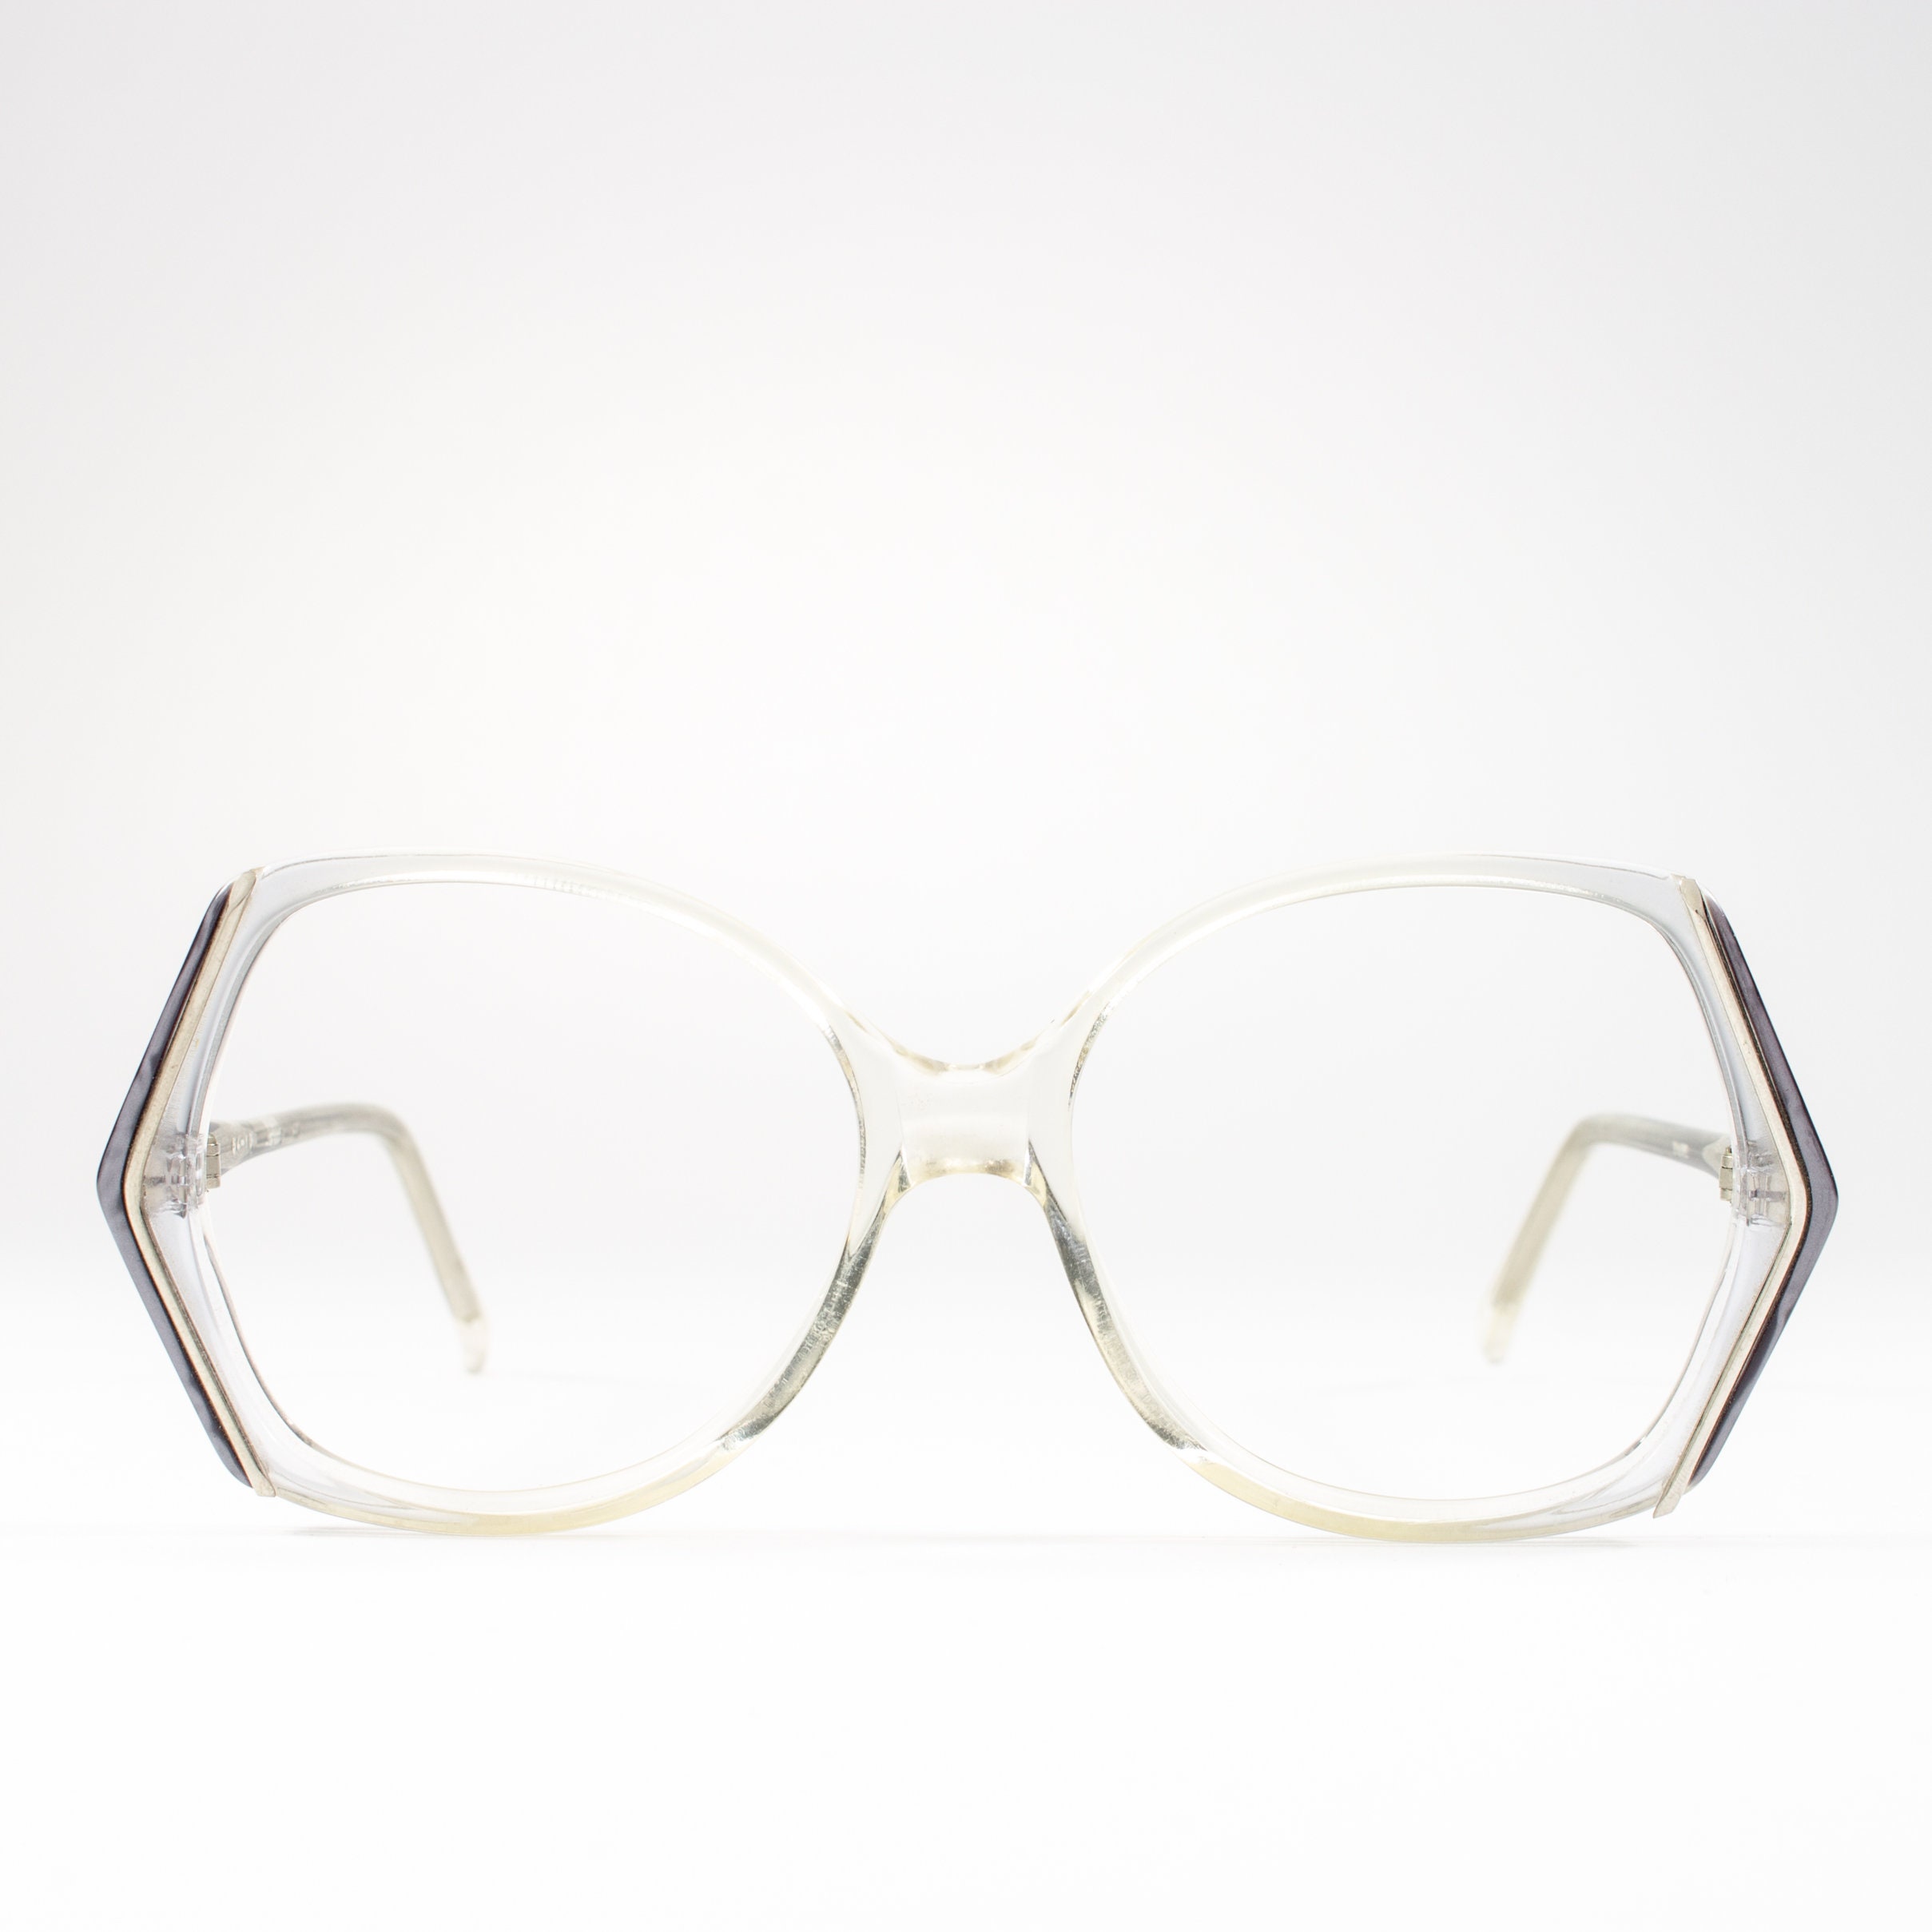 80s Vintage Glasses 1980s Eyeglasses Unique Eyeglass Frames